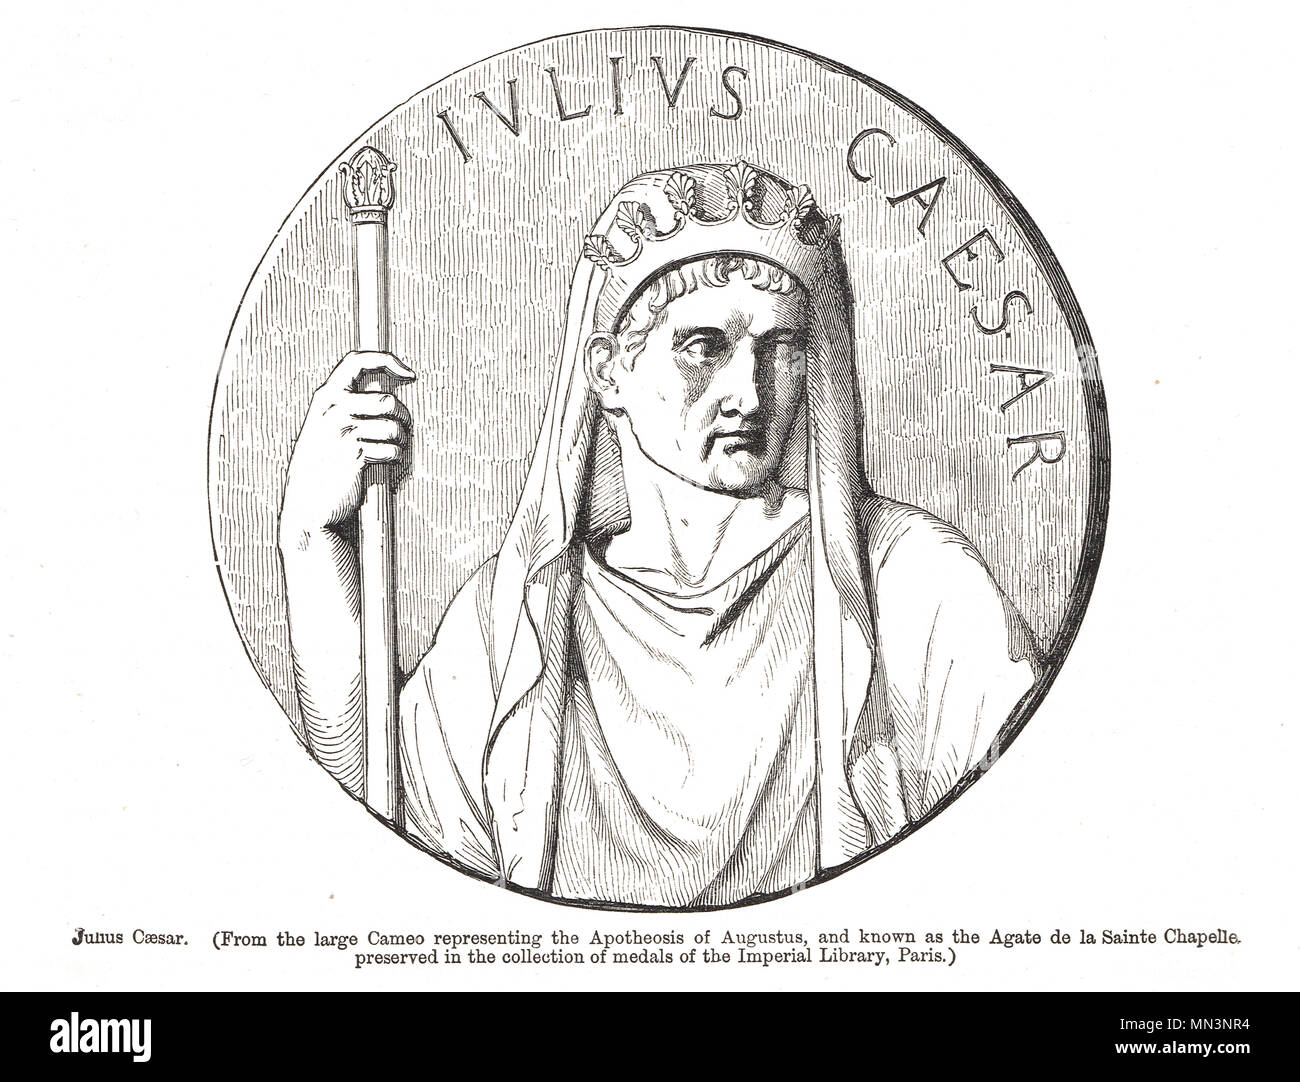 Jules César, de l'apothéose de la camée représentant Auguste, connu comme l'Agate de la Sainte Chapelle Banque D'Images